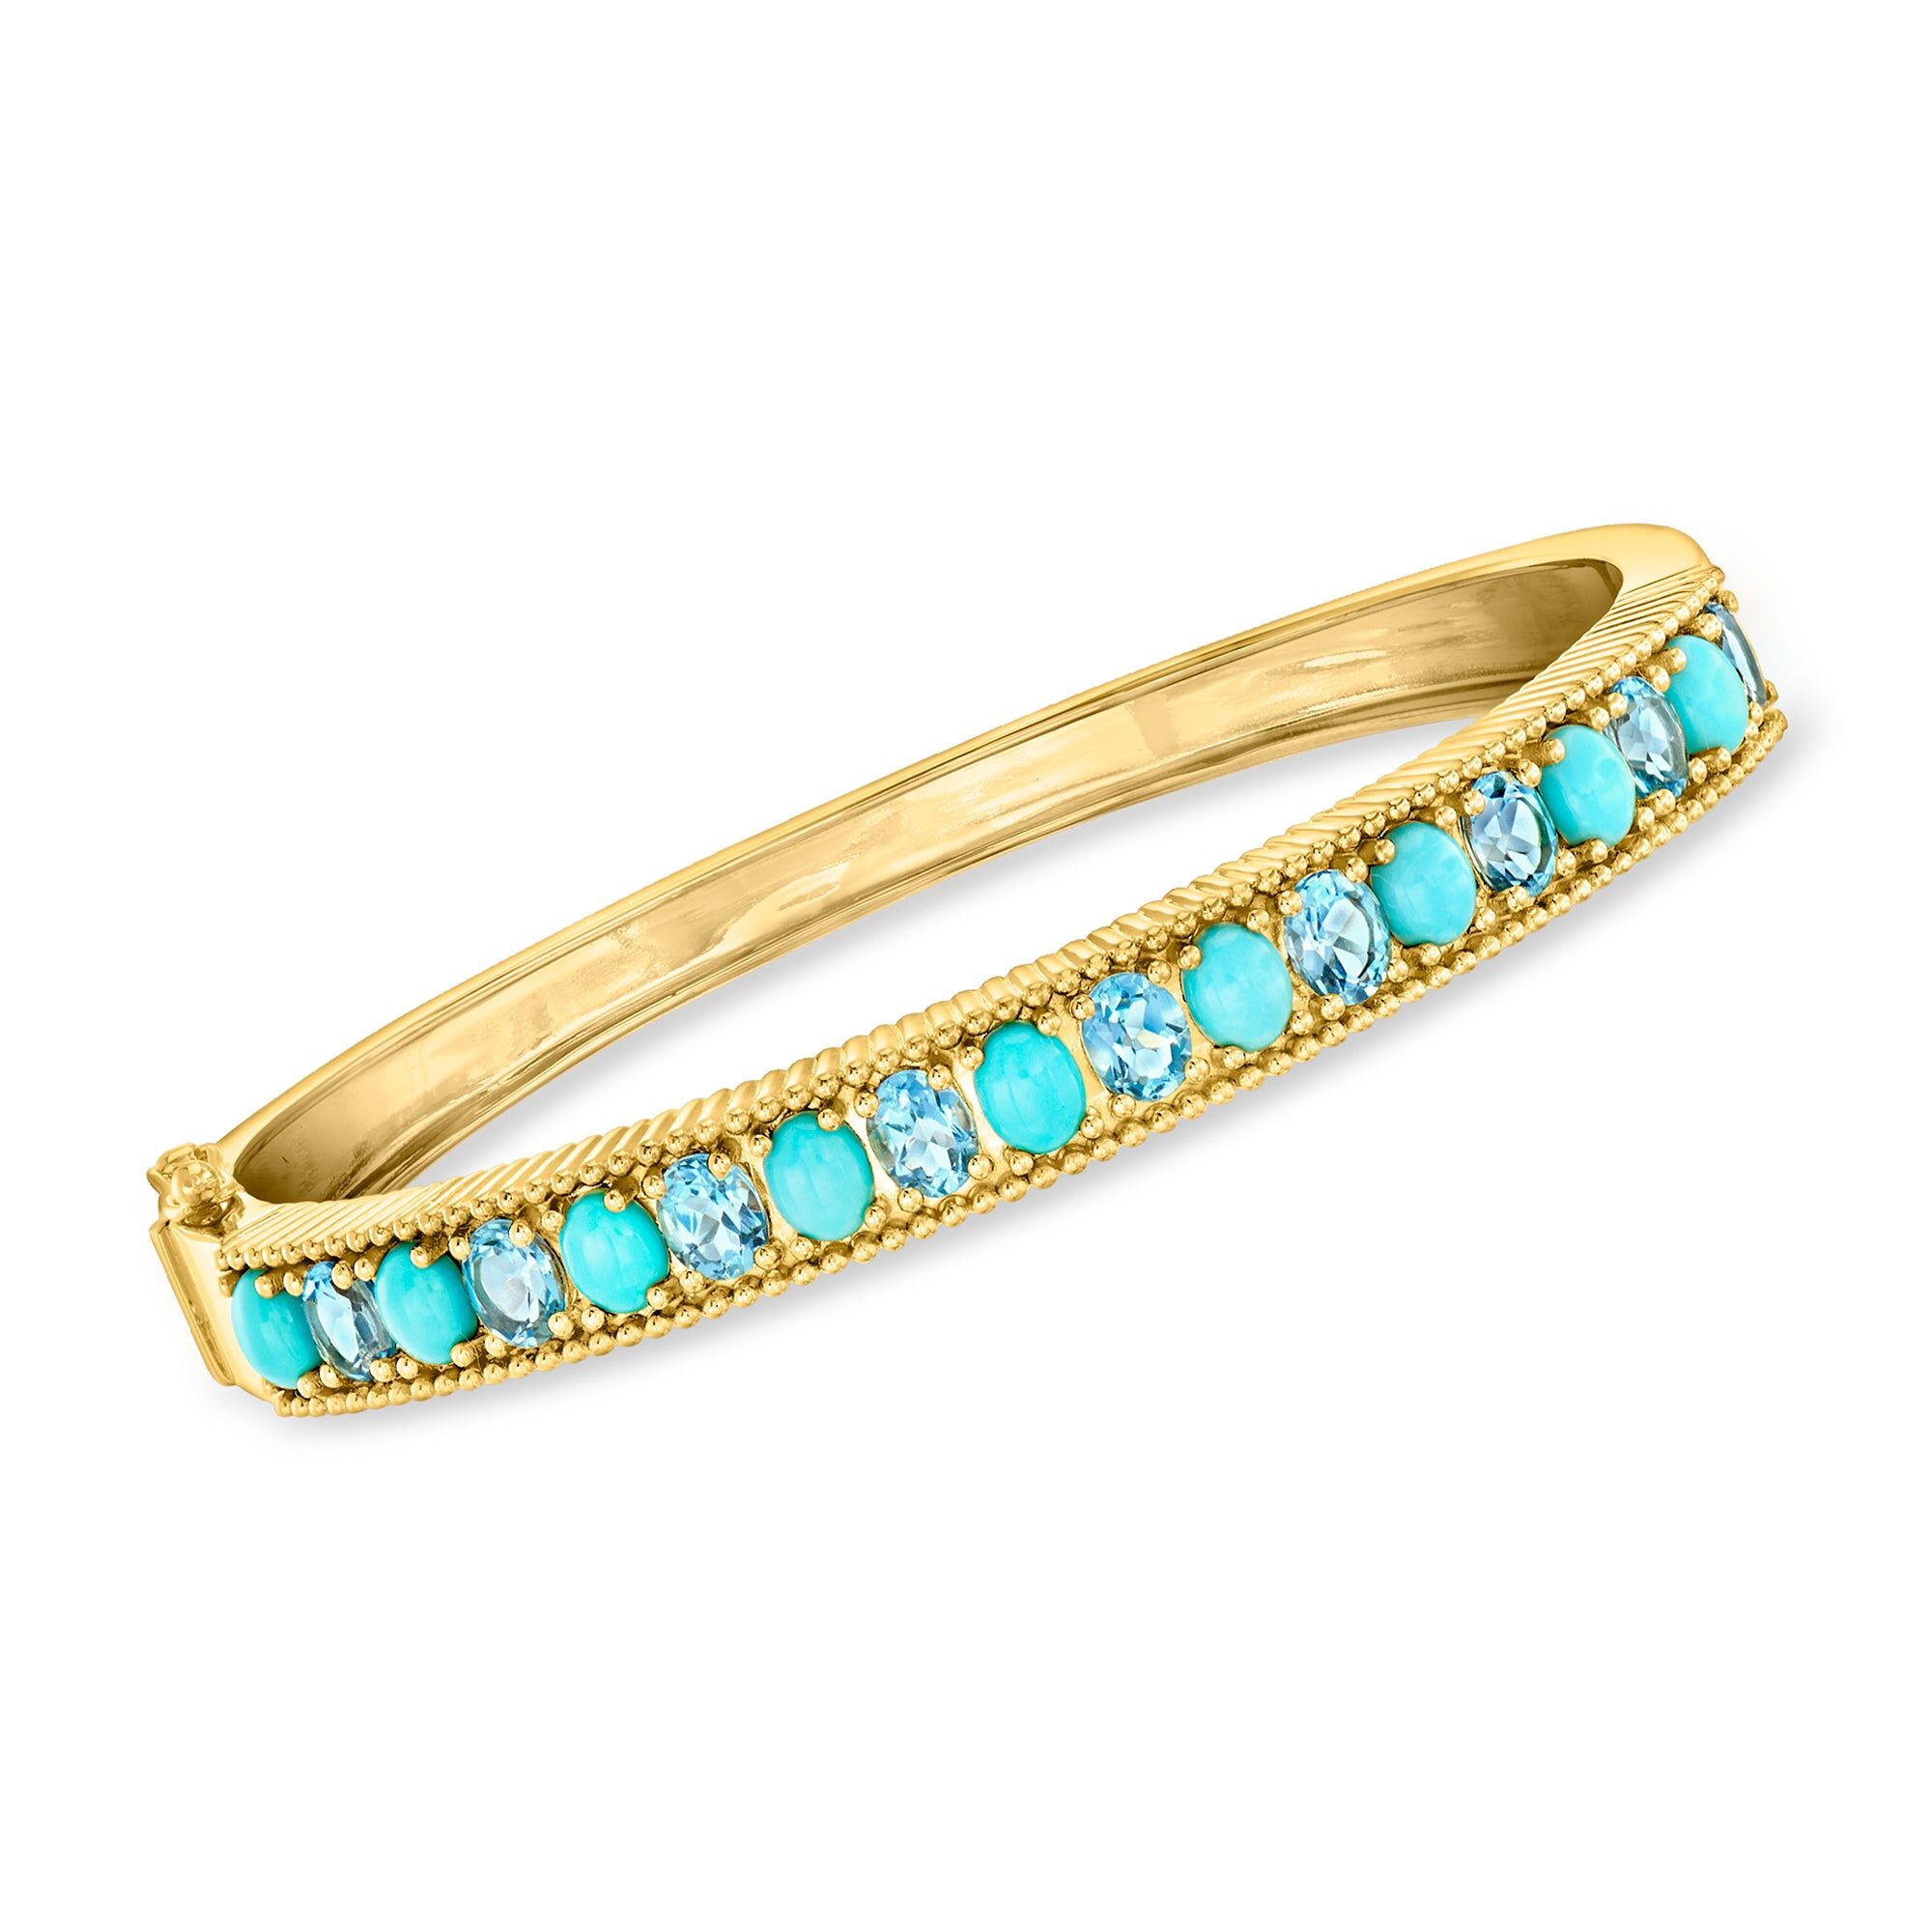 Ross-Simons Turquoise and Swiss Blue Topaz Bangle Bracelet in 18kt Gold Over Sterling female